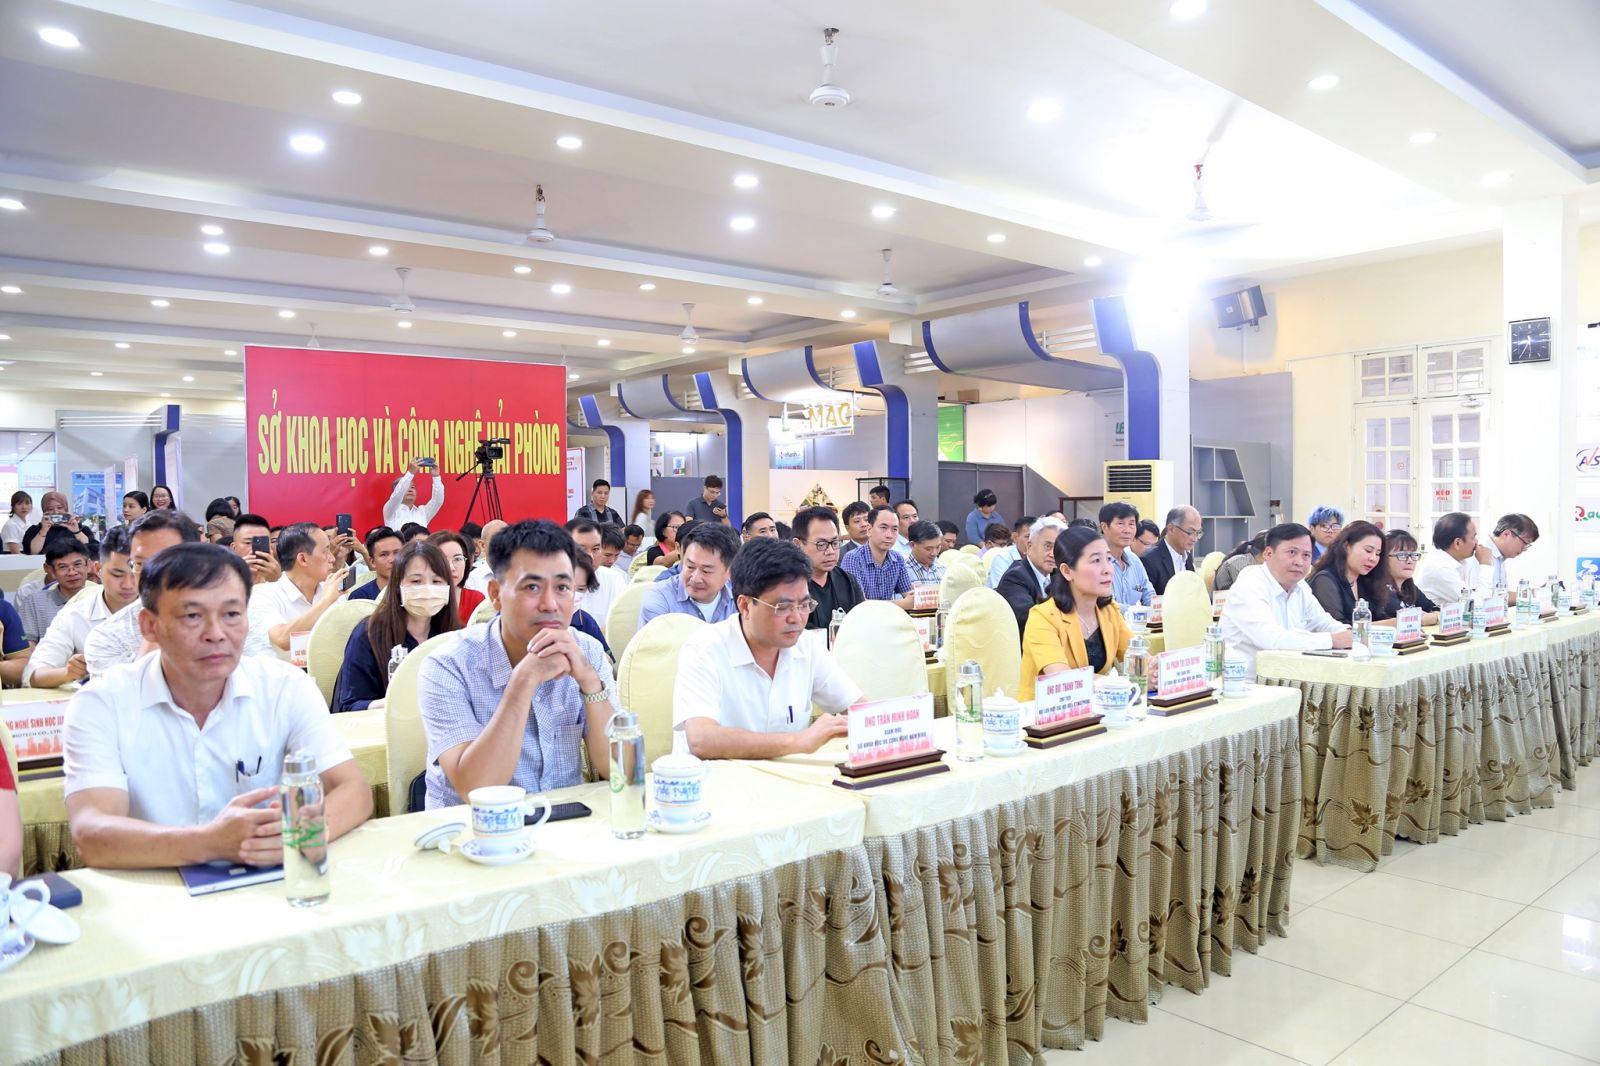 Phiên kết nối cung cầu công nghệ giữa các tổ chức, doanh nghiệp Việt Nam và Đài Loan (Trung Quốc).